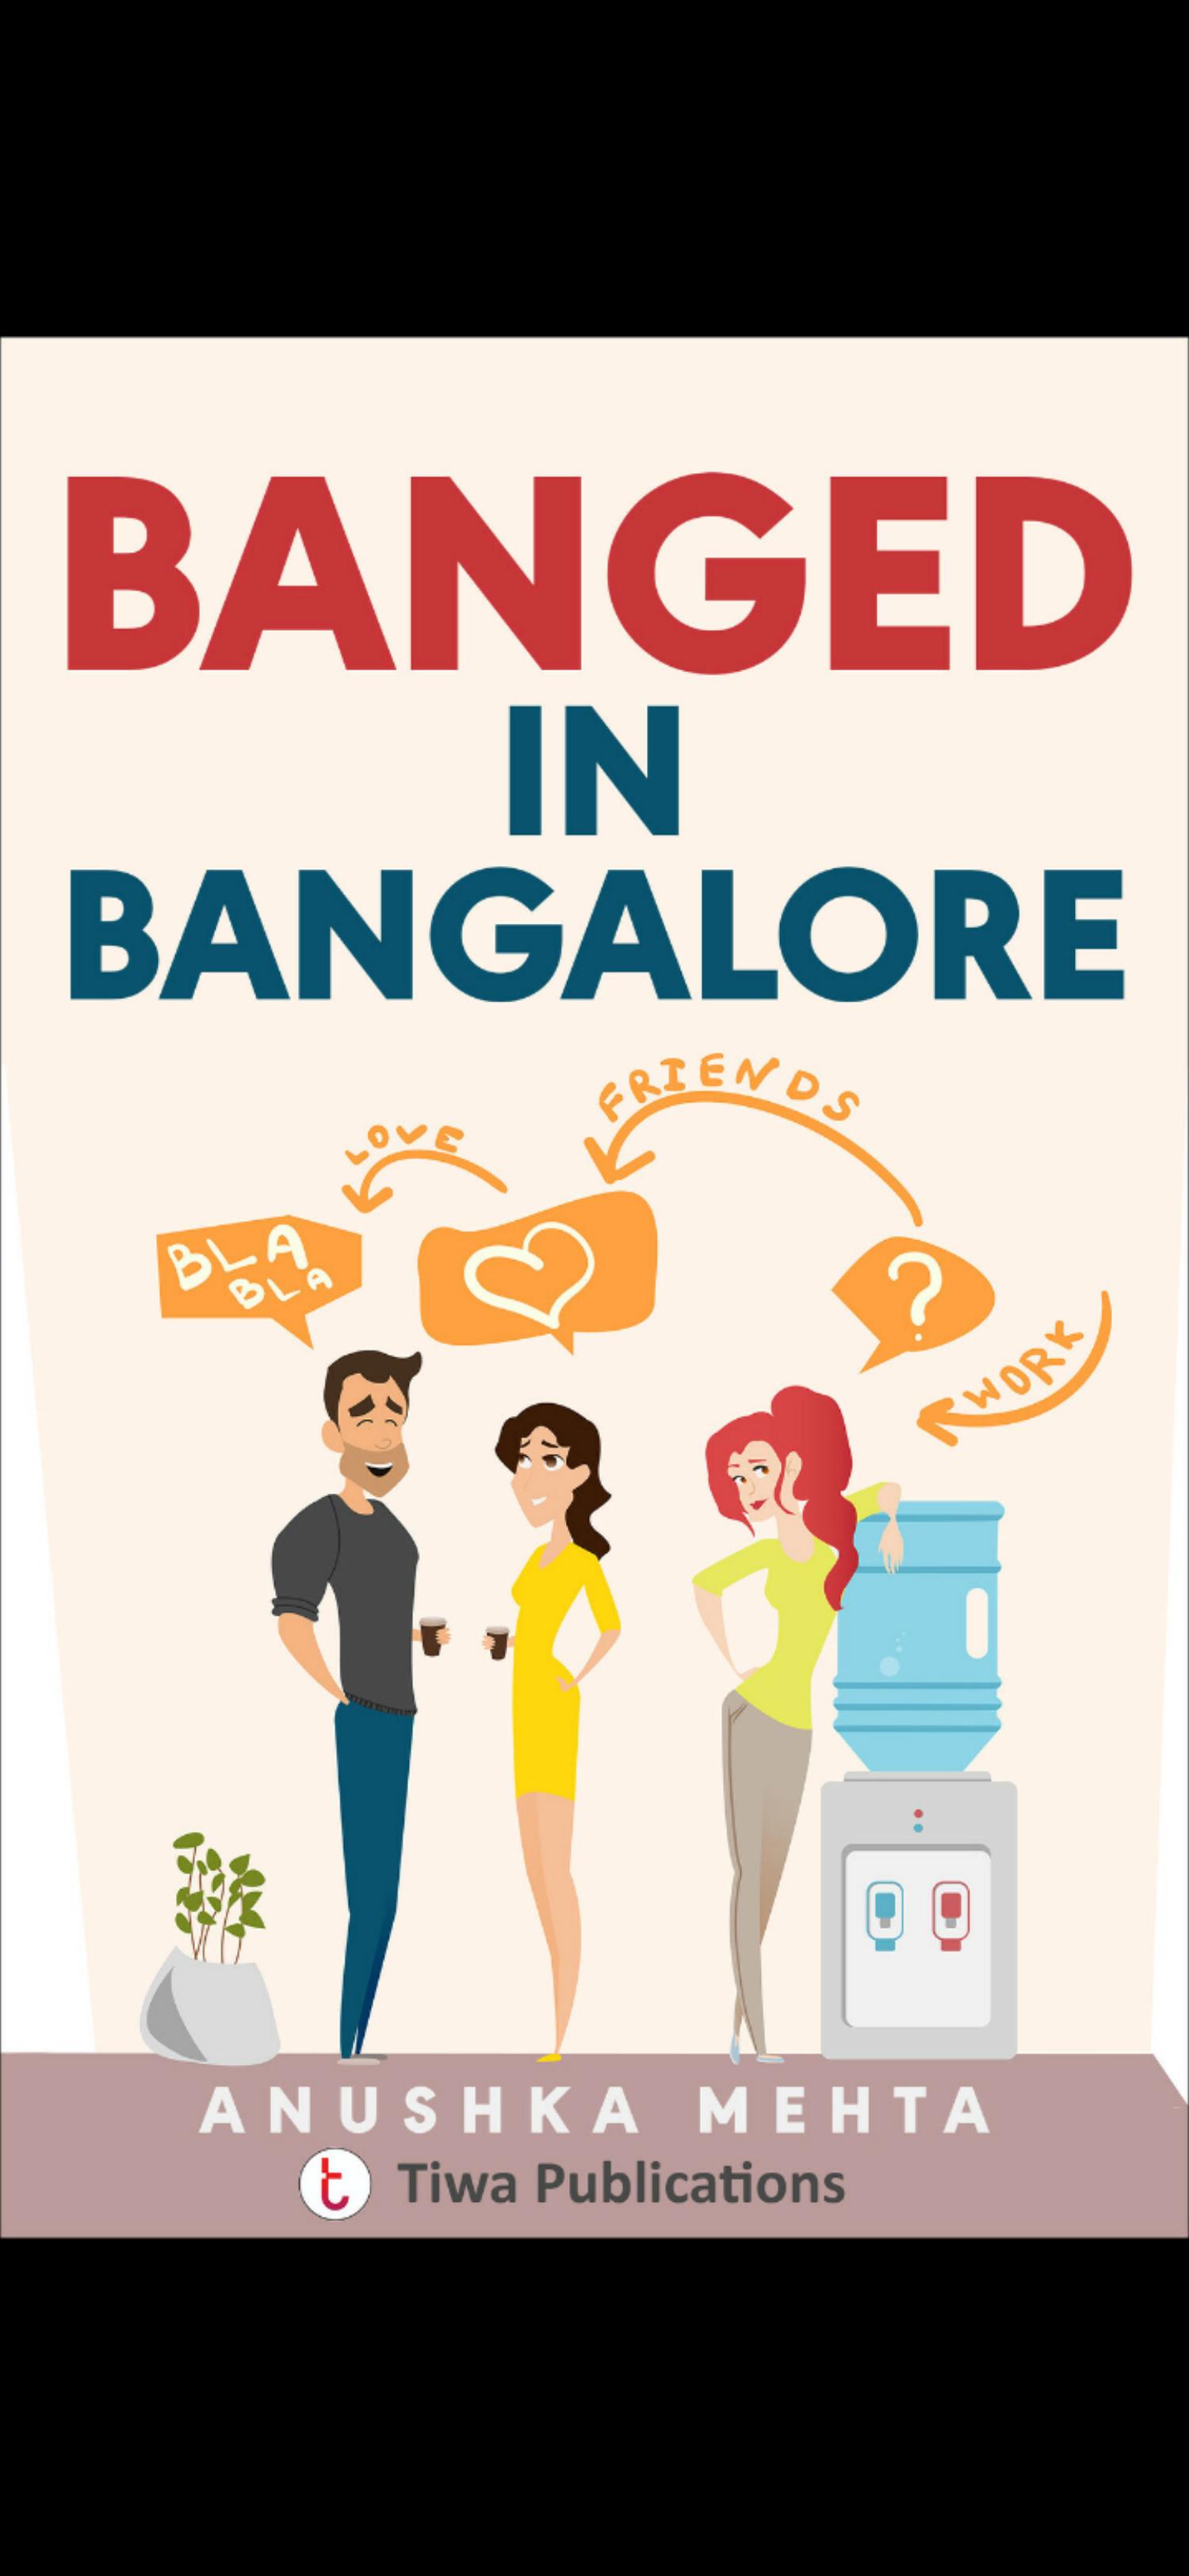 Banged in Bangalore by Anushka Mehta